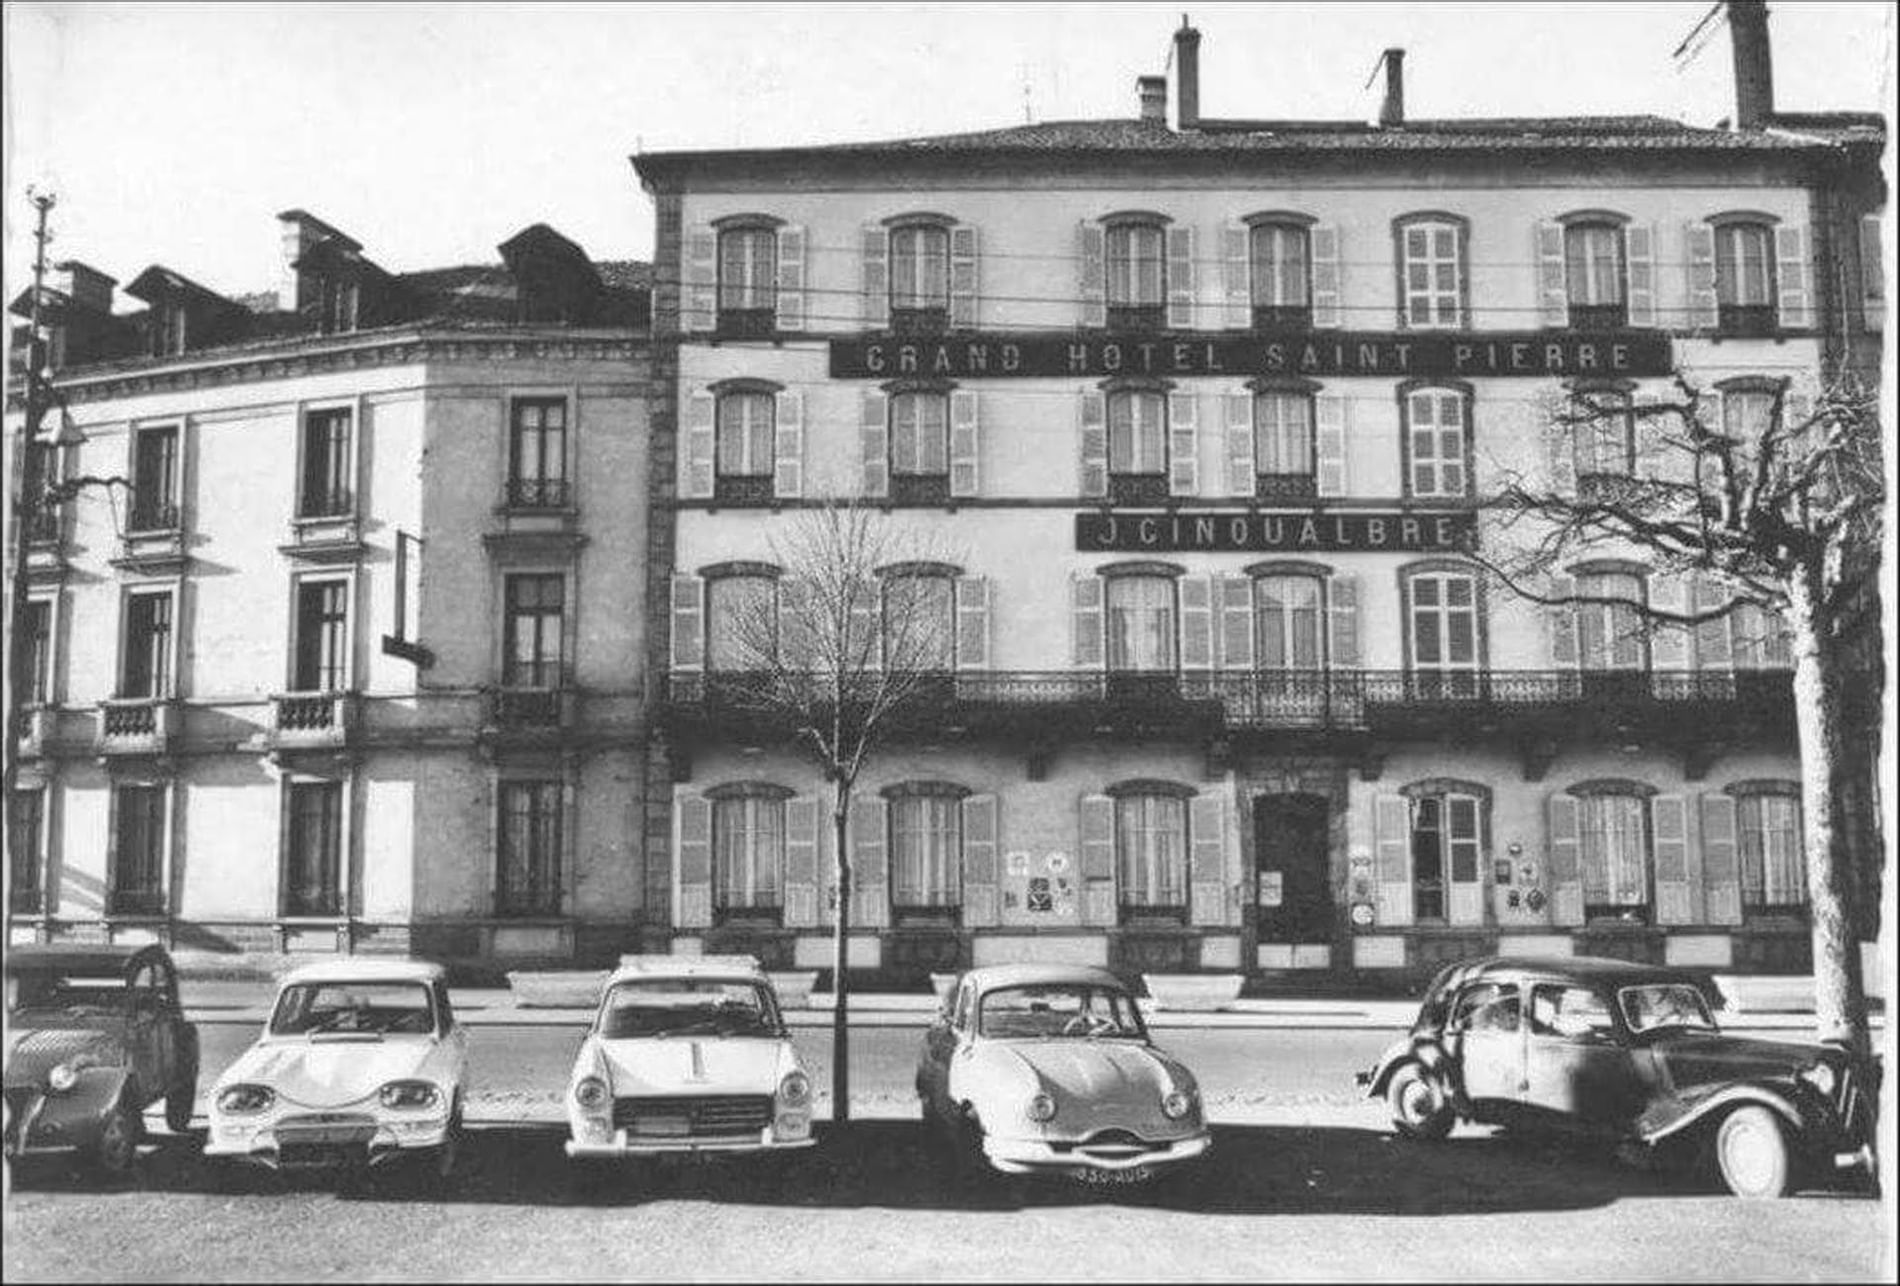 Hôtel Saint Pierre Aurillac 